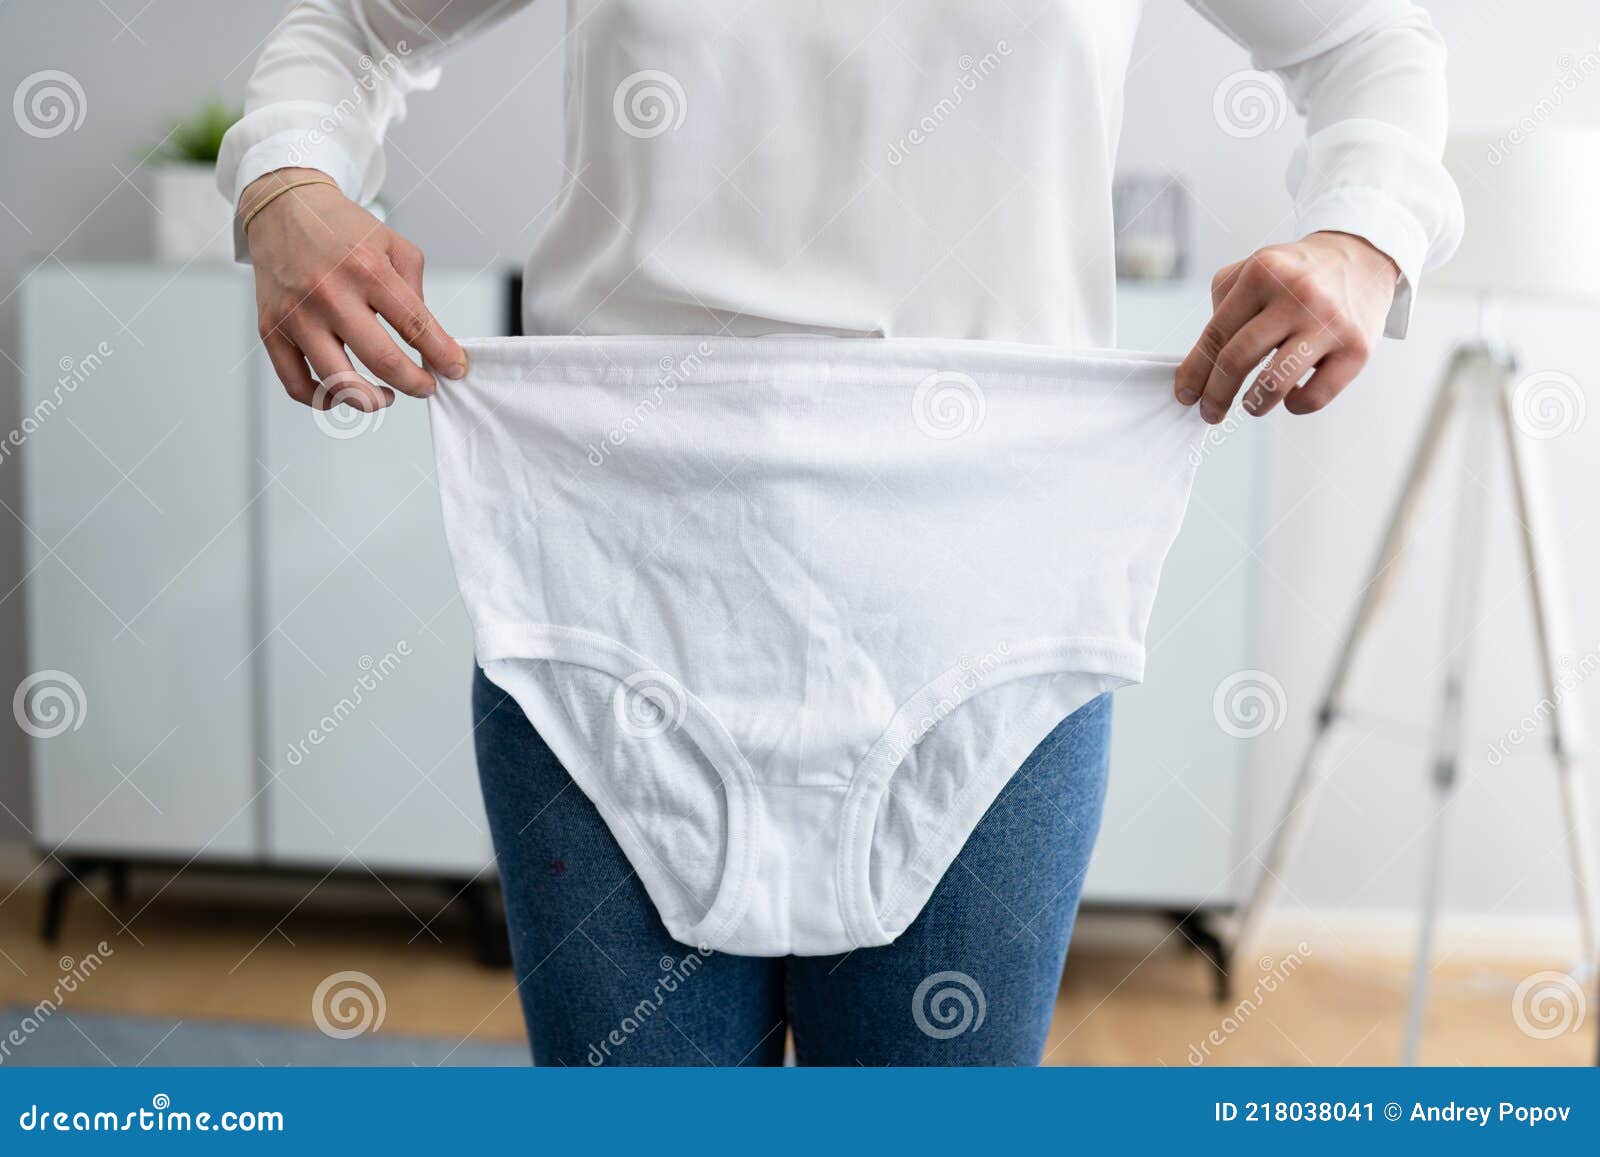 brian walpole add granny in underwear pics photo